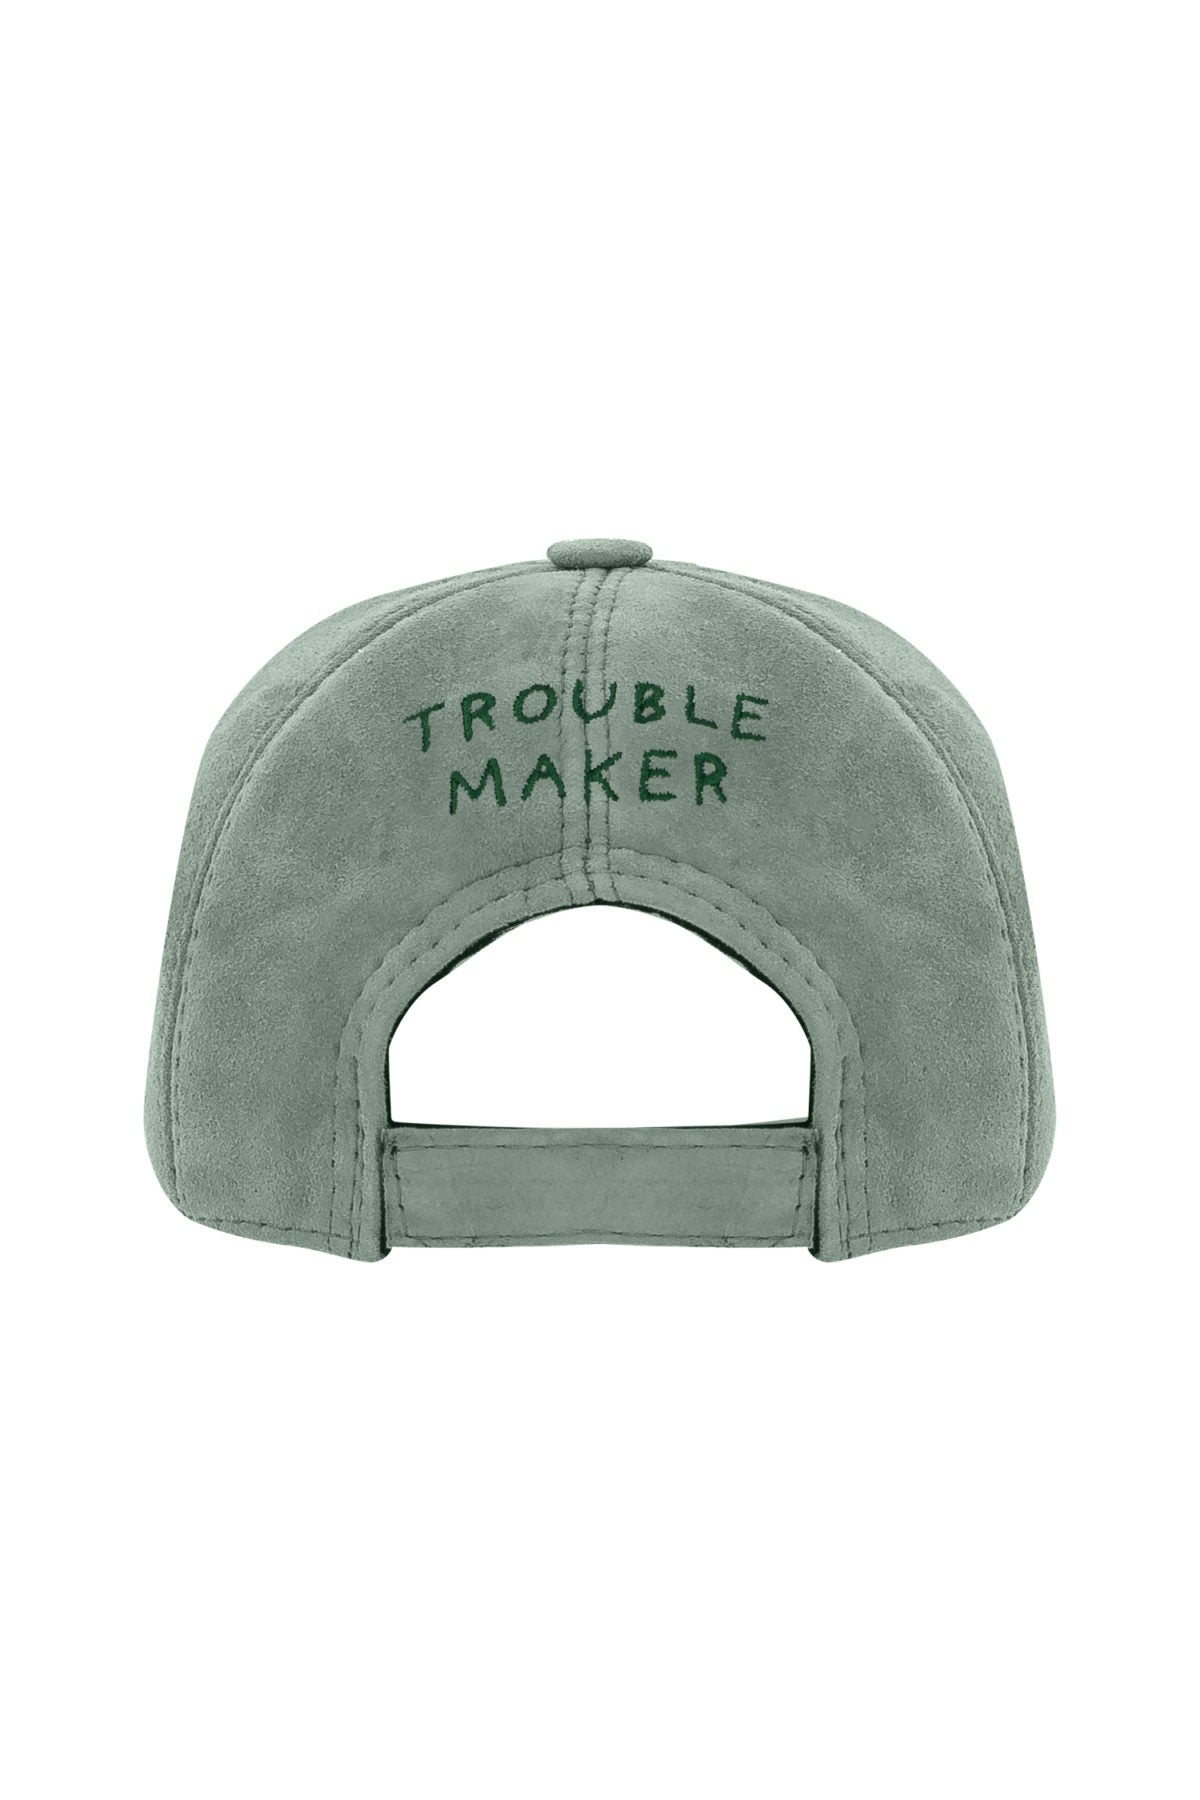 Trouble Maker - Deniz Yeşili